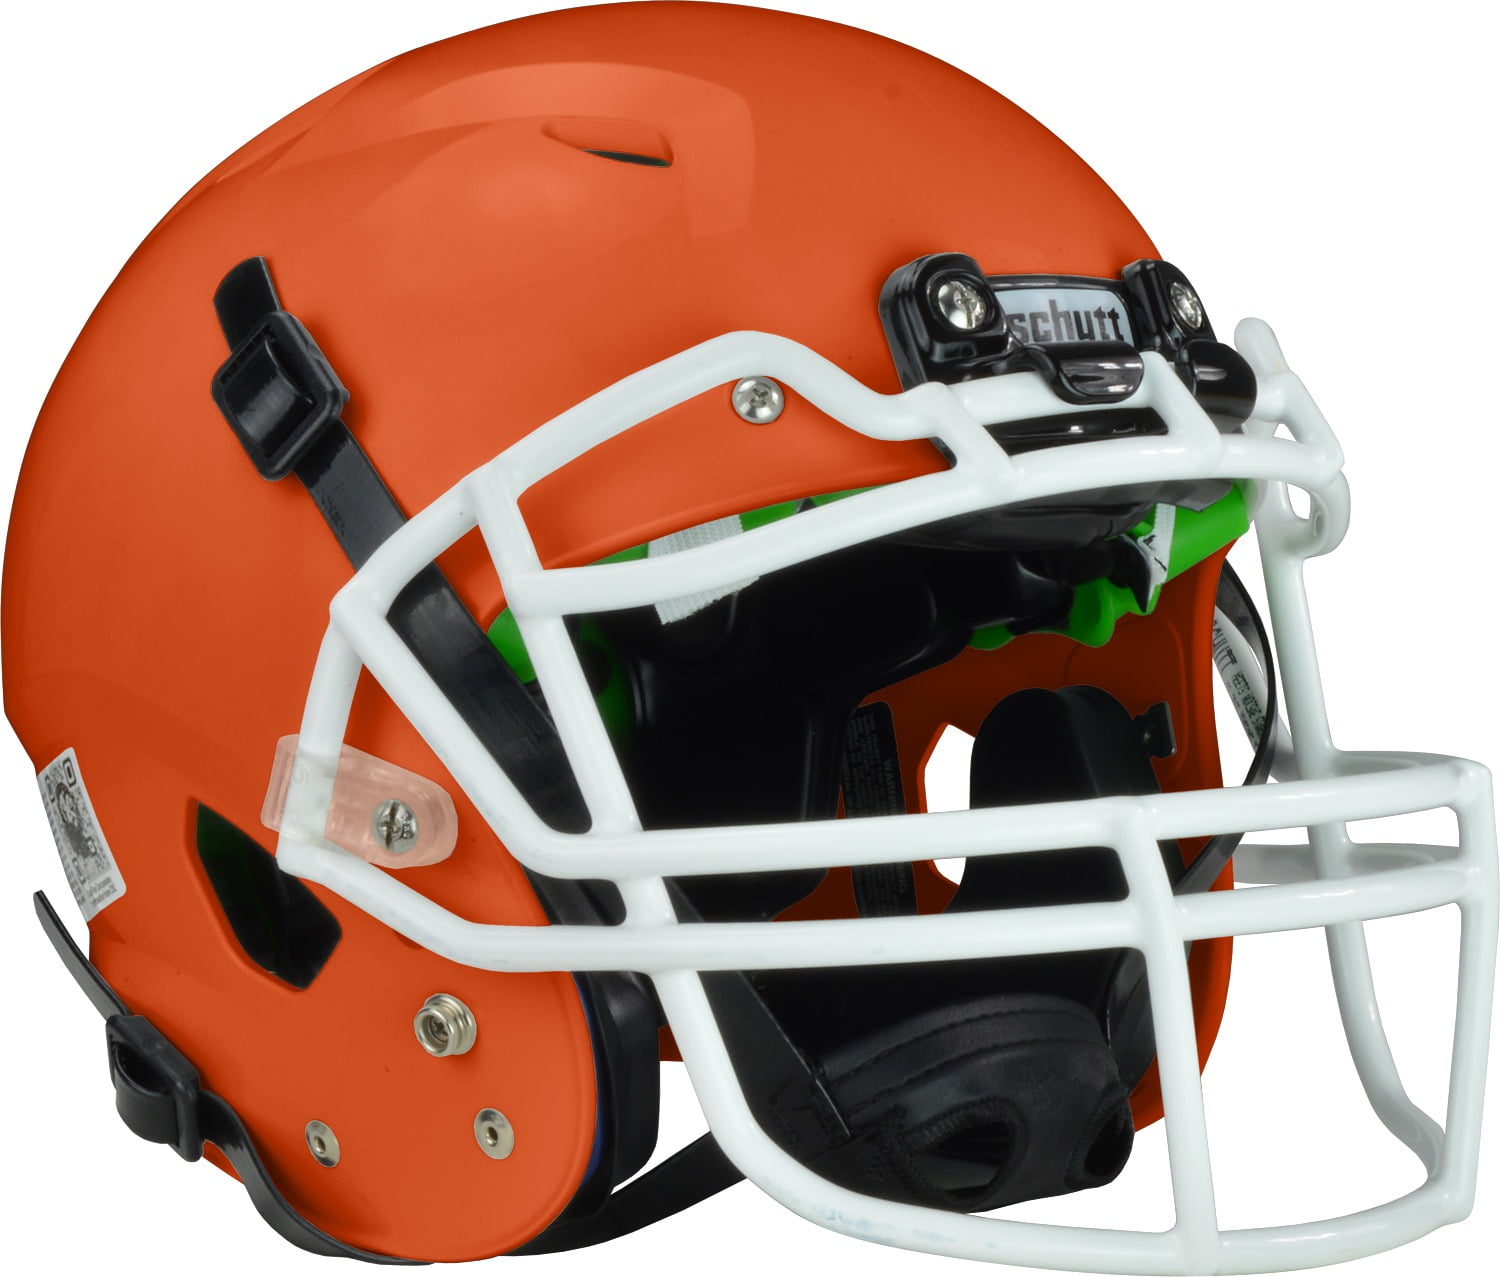 Schutt Youth Vengeance A3 Football Helmet - Walmart.com